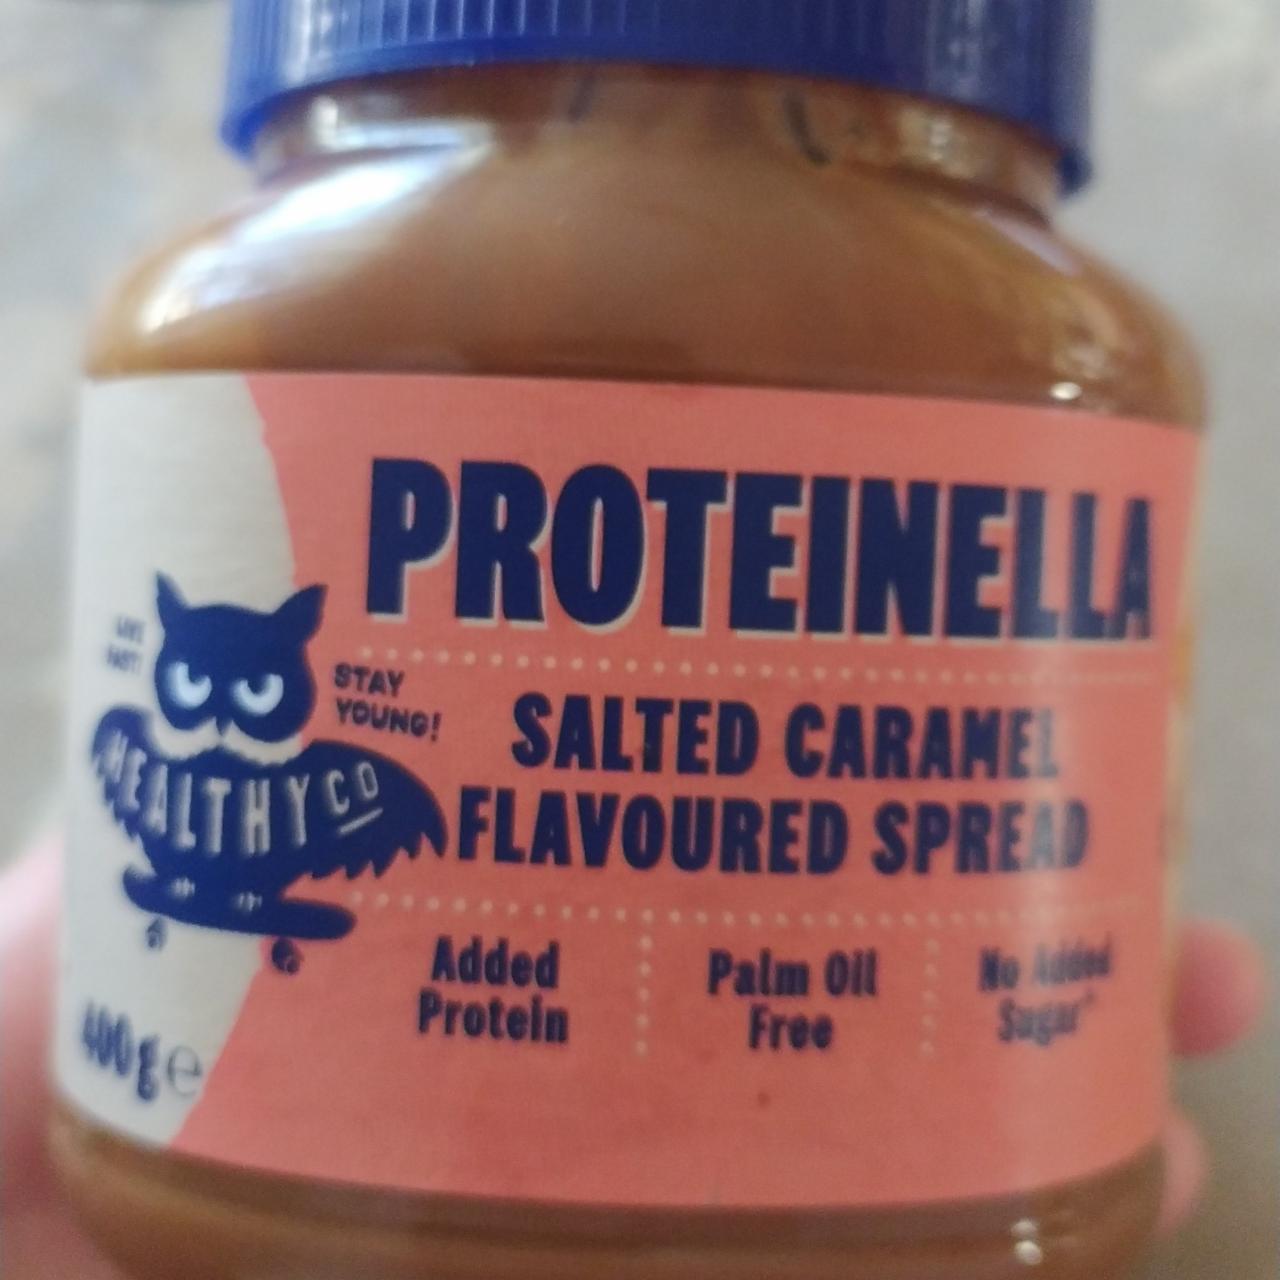 Фото - протеиновая соленая карамель Proteinella